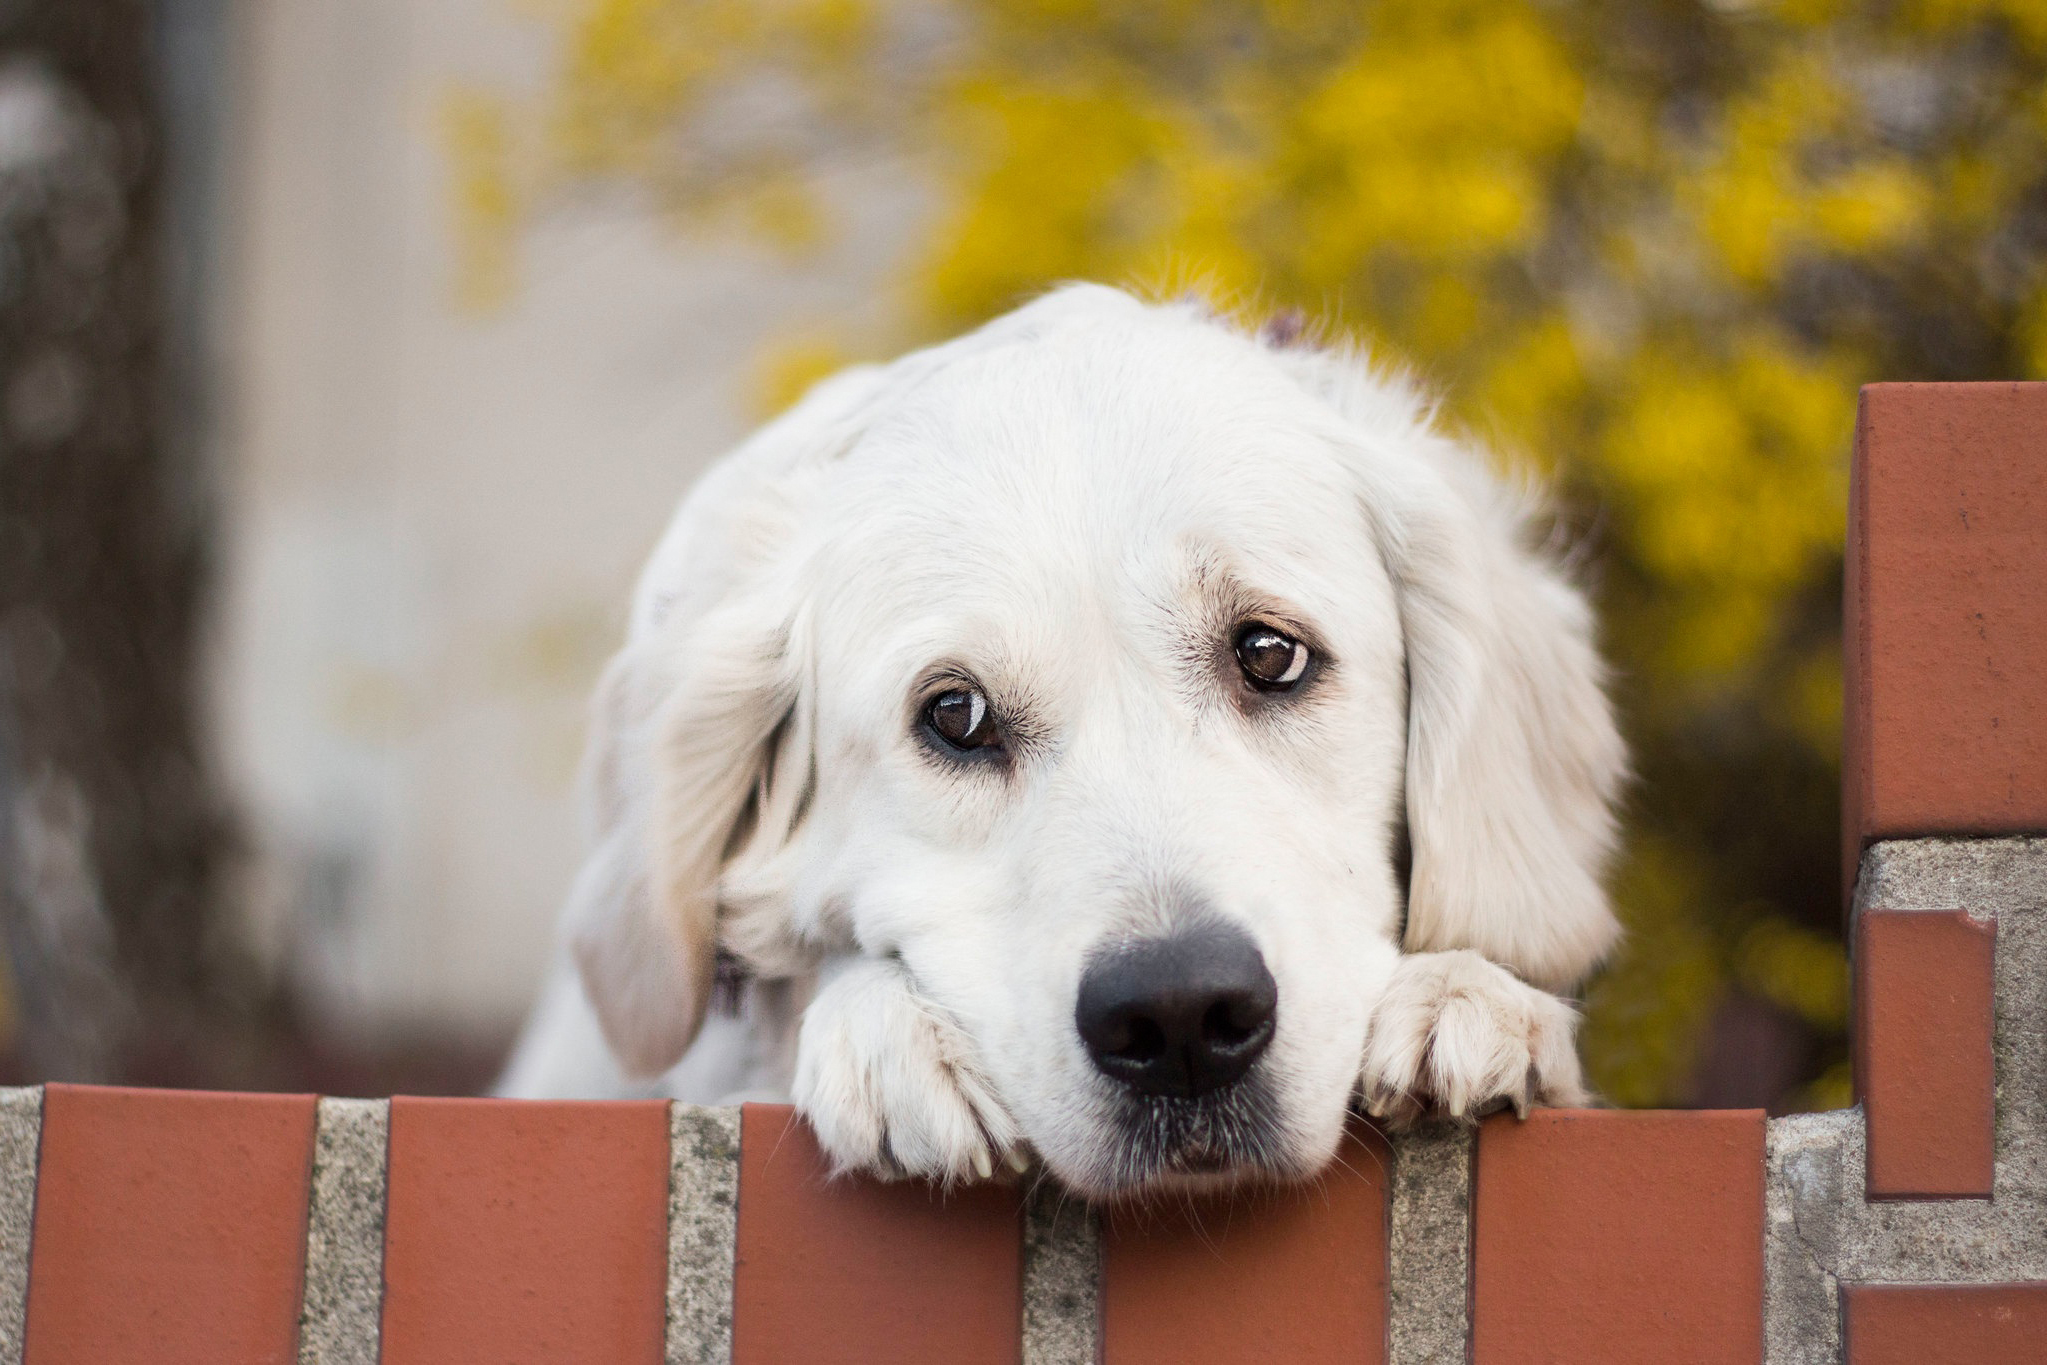 В США вступил в силу запрет на ввоз собак из 113 стран мира, в том числе Узбекистана